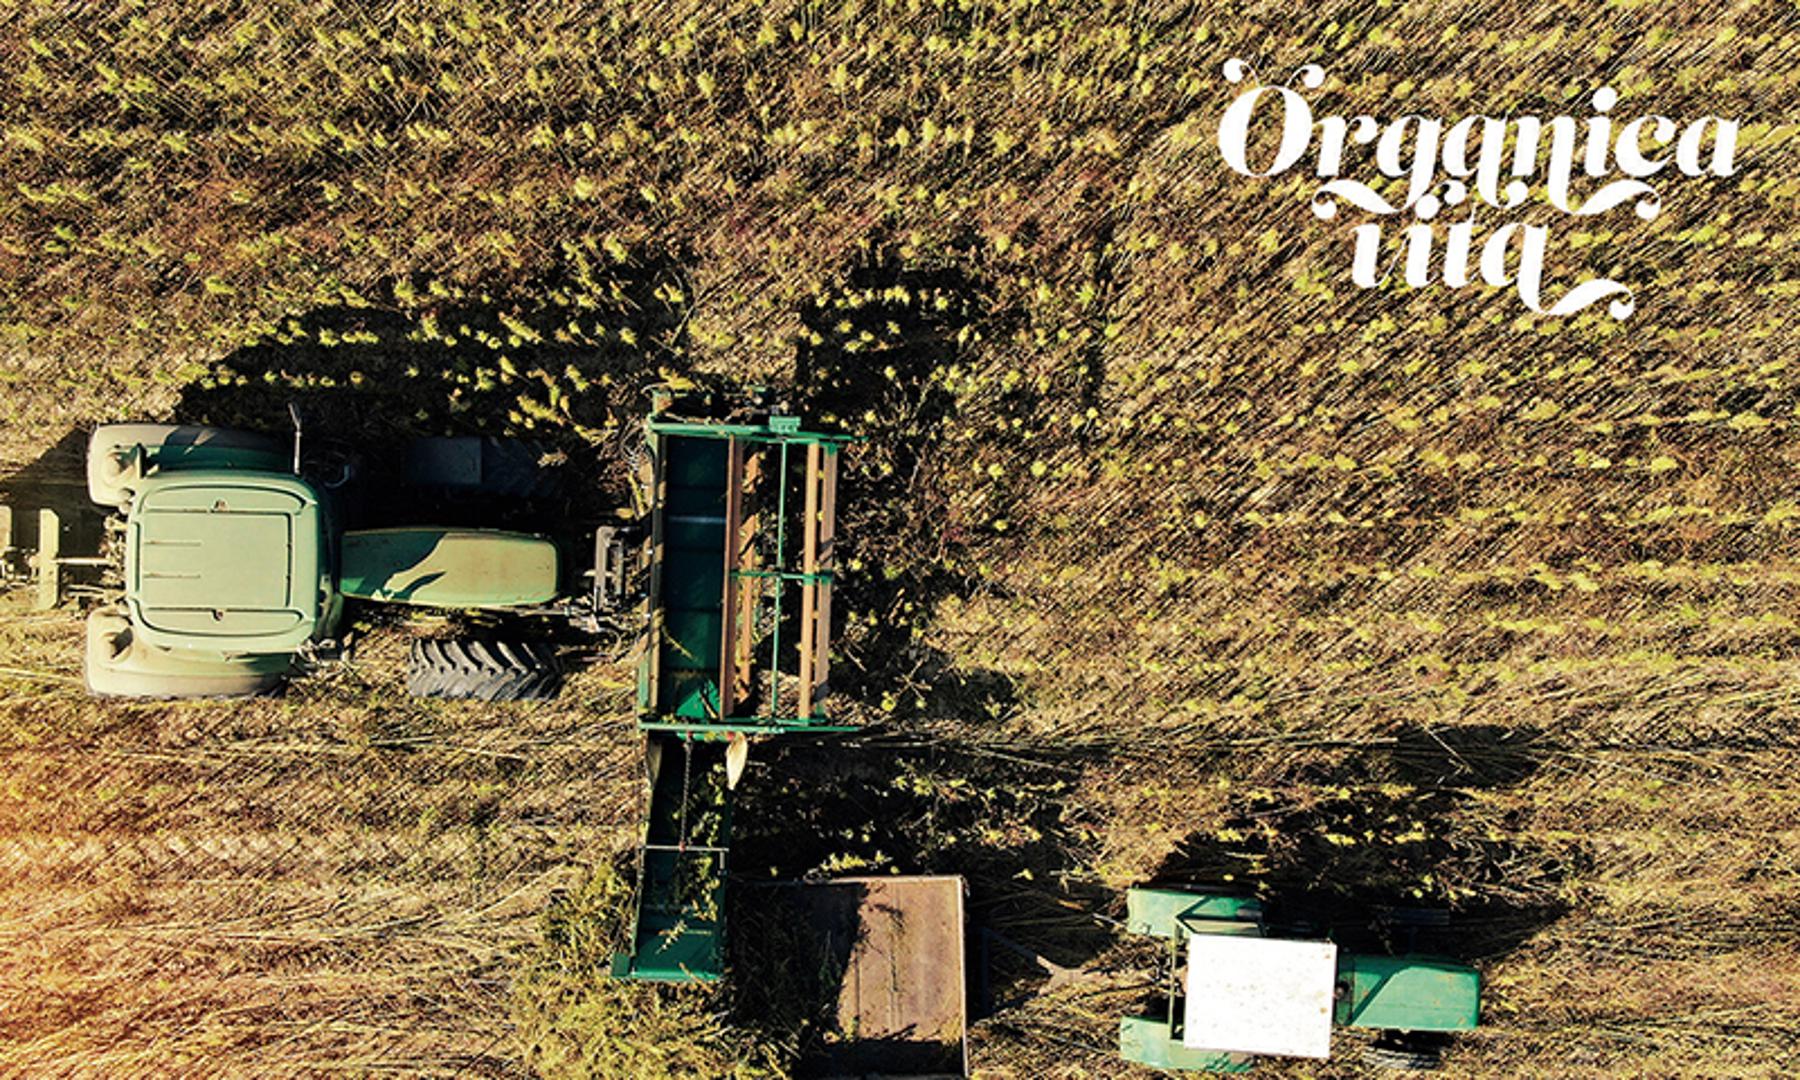 Obrt Organica Vita bavi se ekološkom proizvodnjom ljekovitog bilja i uljarica